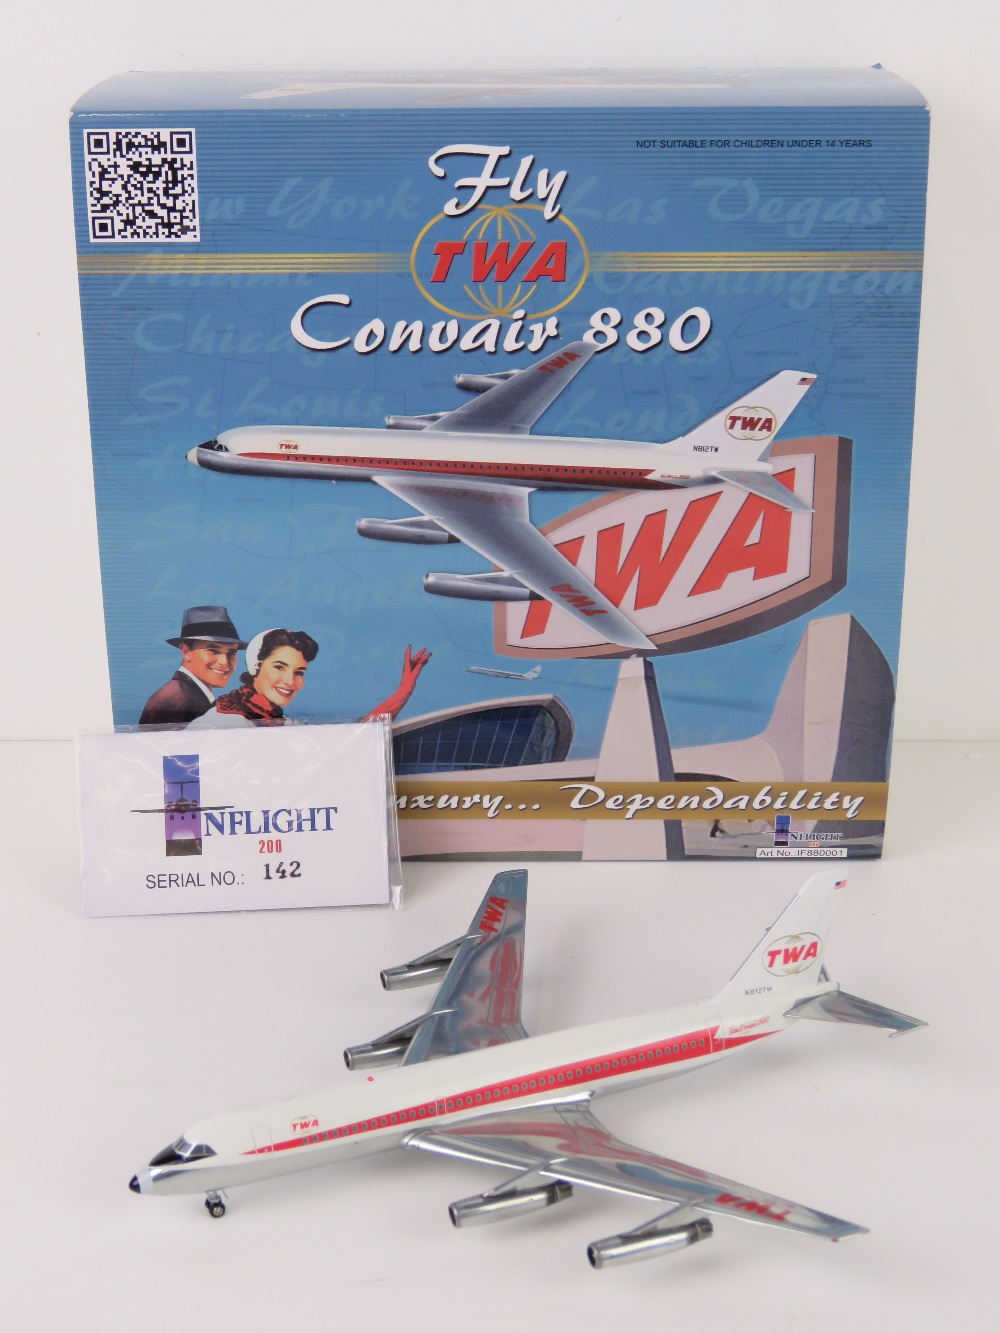 A TWA Convair 880 1/200 scale model airc